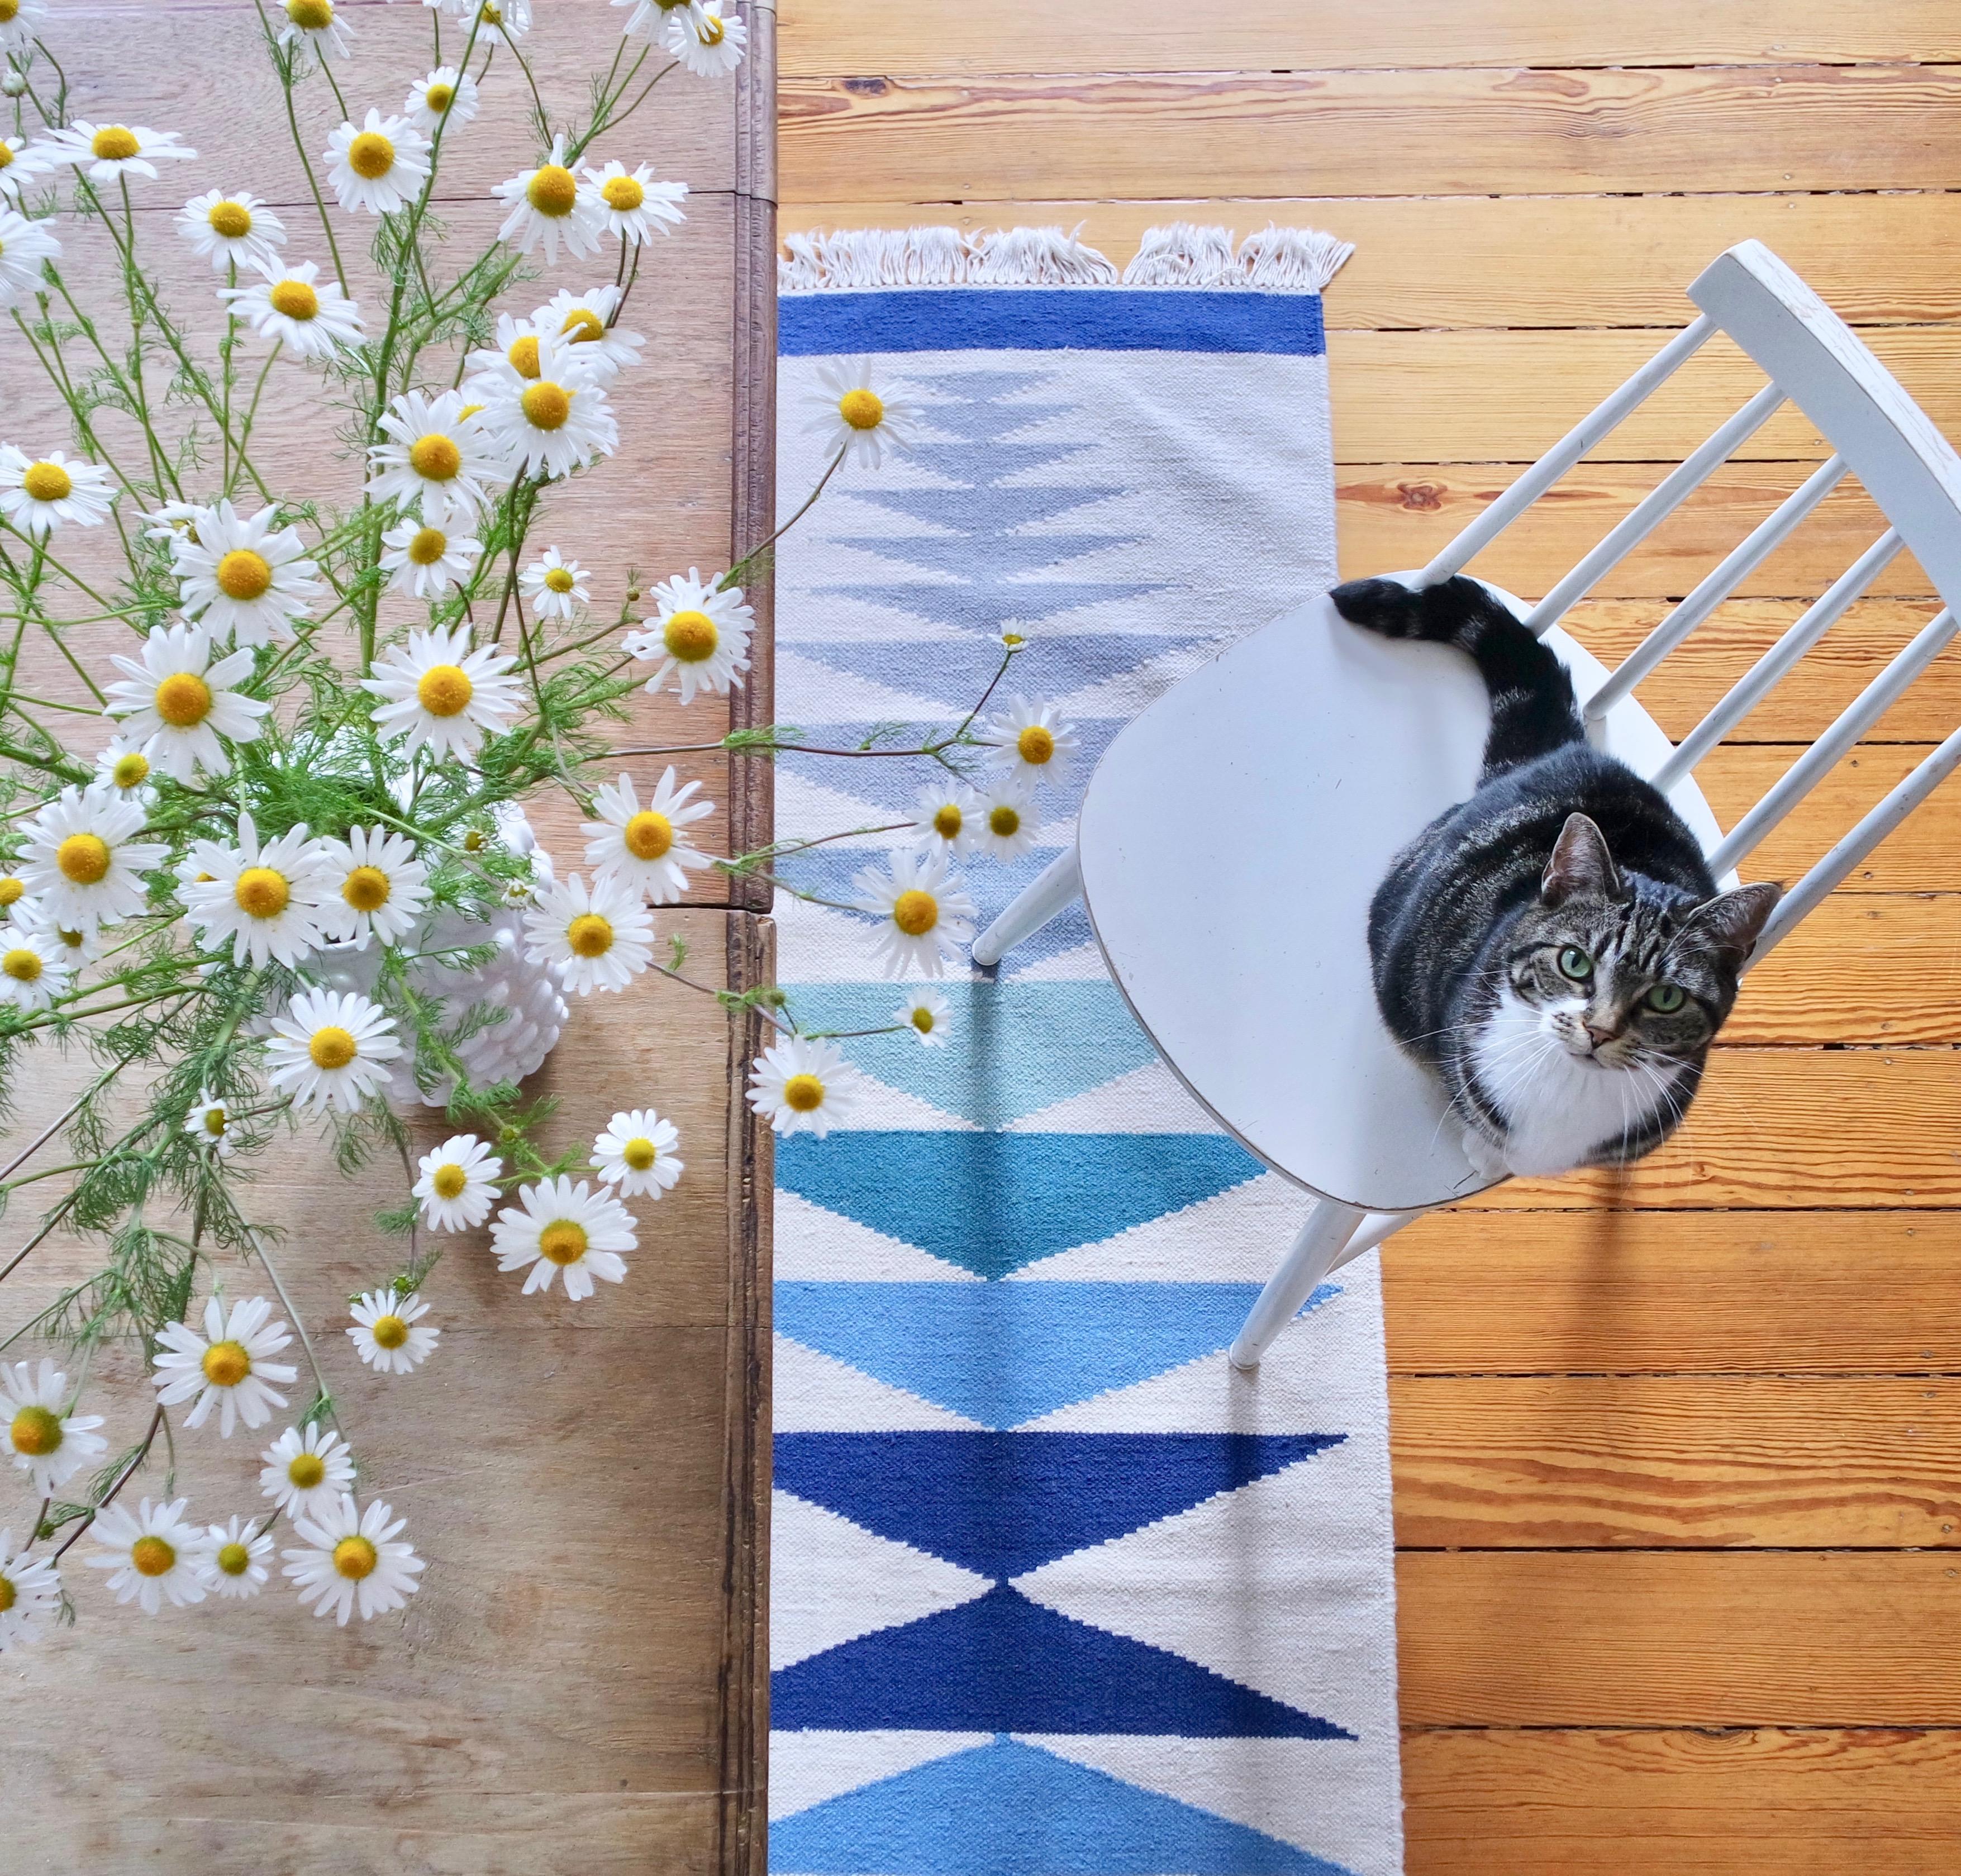 Sommer, frische Kamille in der Vase und Jenne. Was will man mehr? :)
#summerstyle #blueroom #freshflowers #cat #Jenne